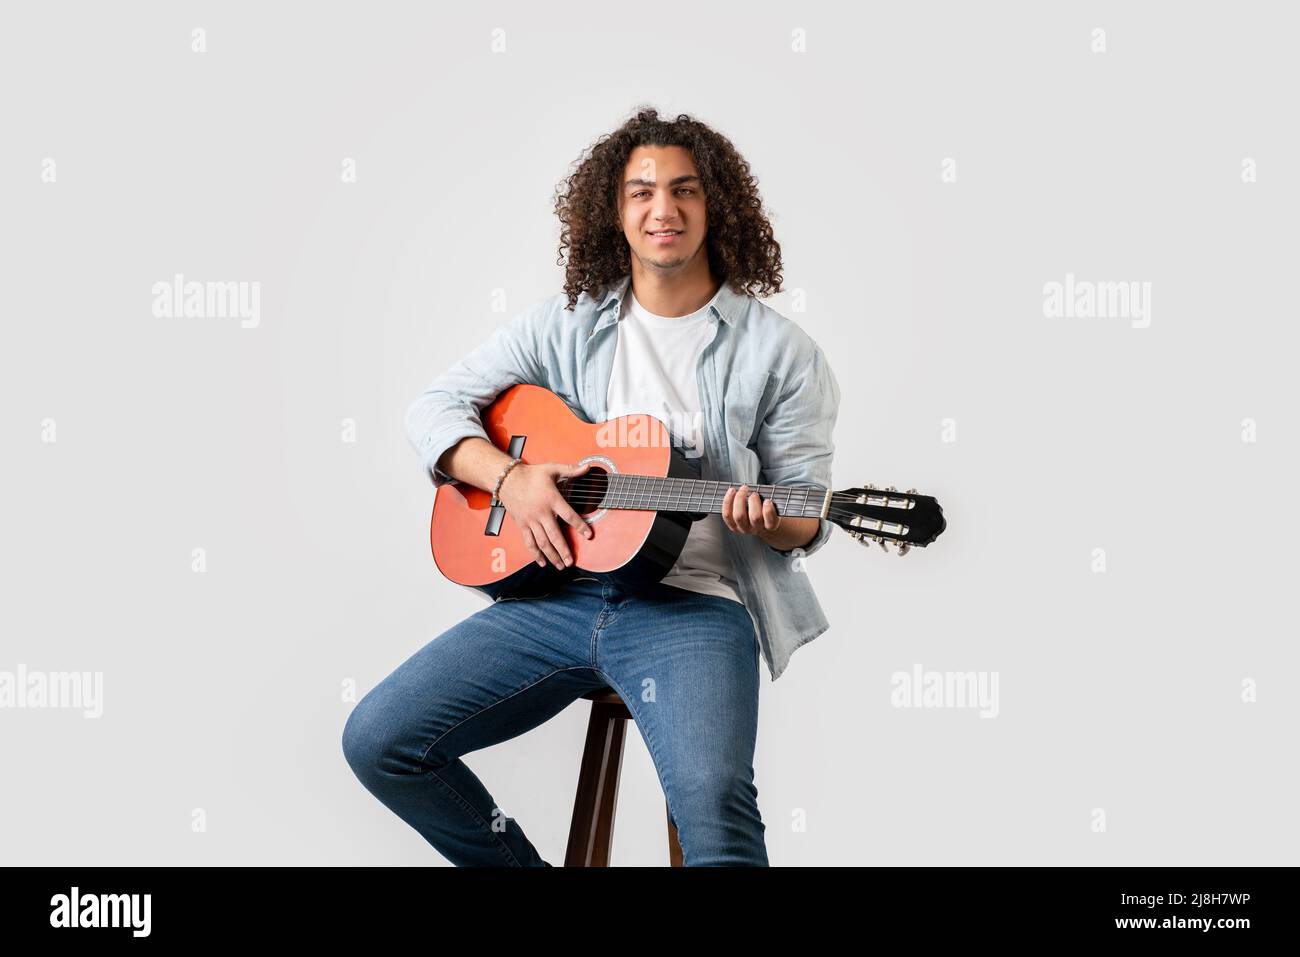 Hombre joven con pelo rizado, tocando guitarra acústica solo, aislado sobre fondo blanco. Fotografías de alta calidad Foto de stock